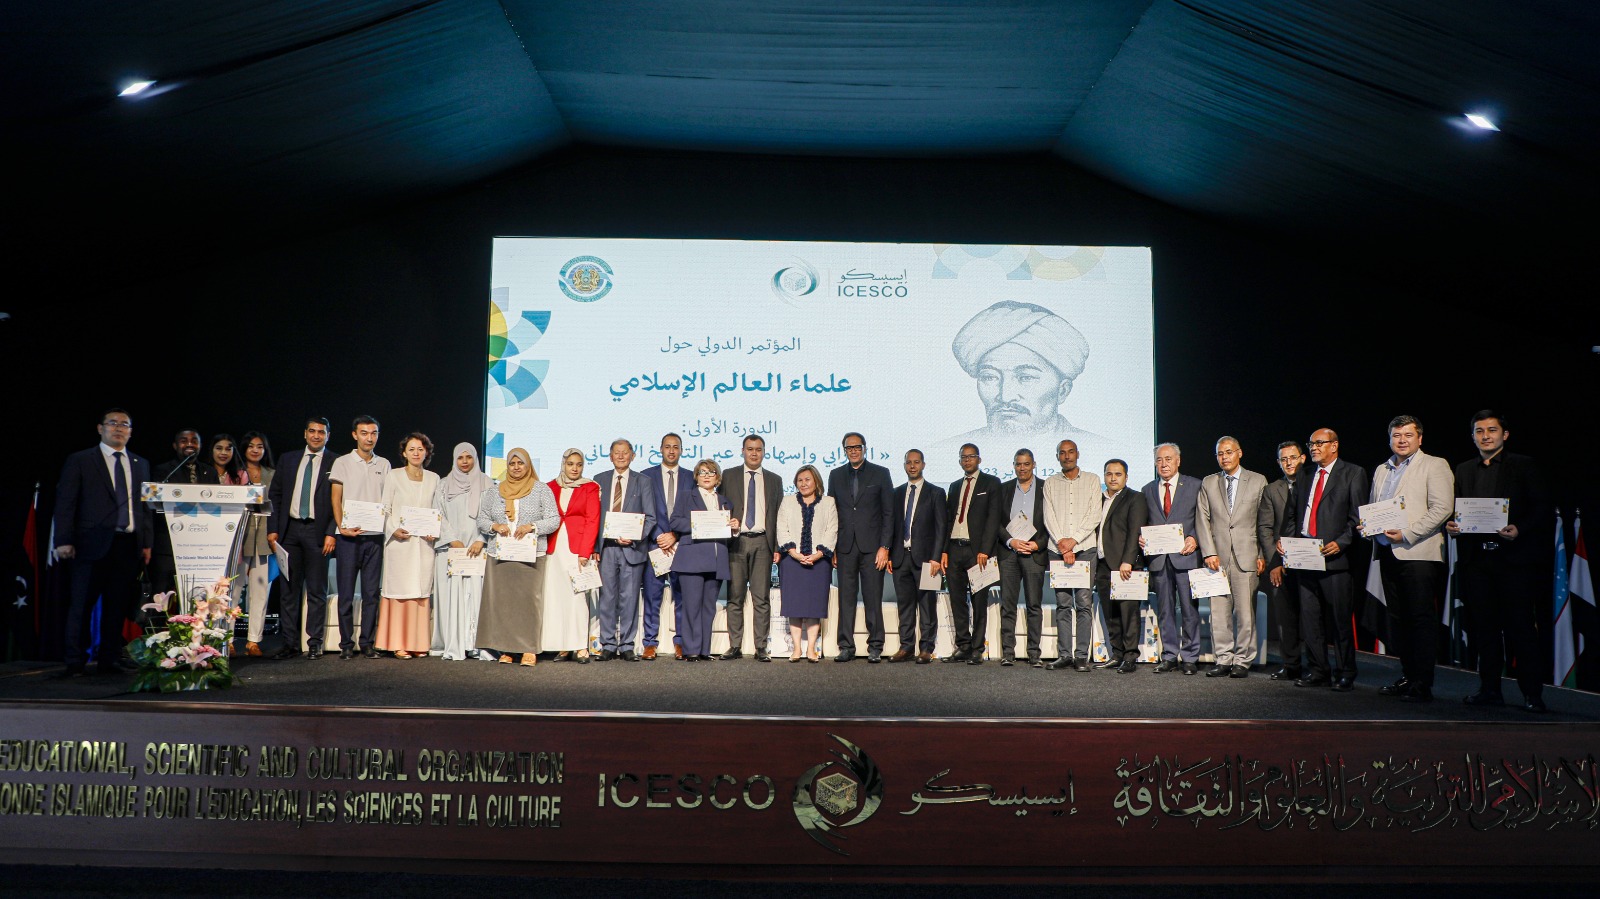 La Conférence internationale sur Al-Farabi clôture ses travaux par la publication de recommandations pour valoriser son héritage scientifique